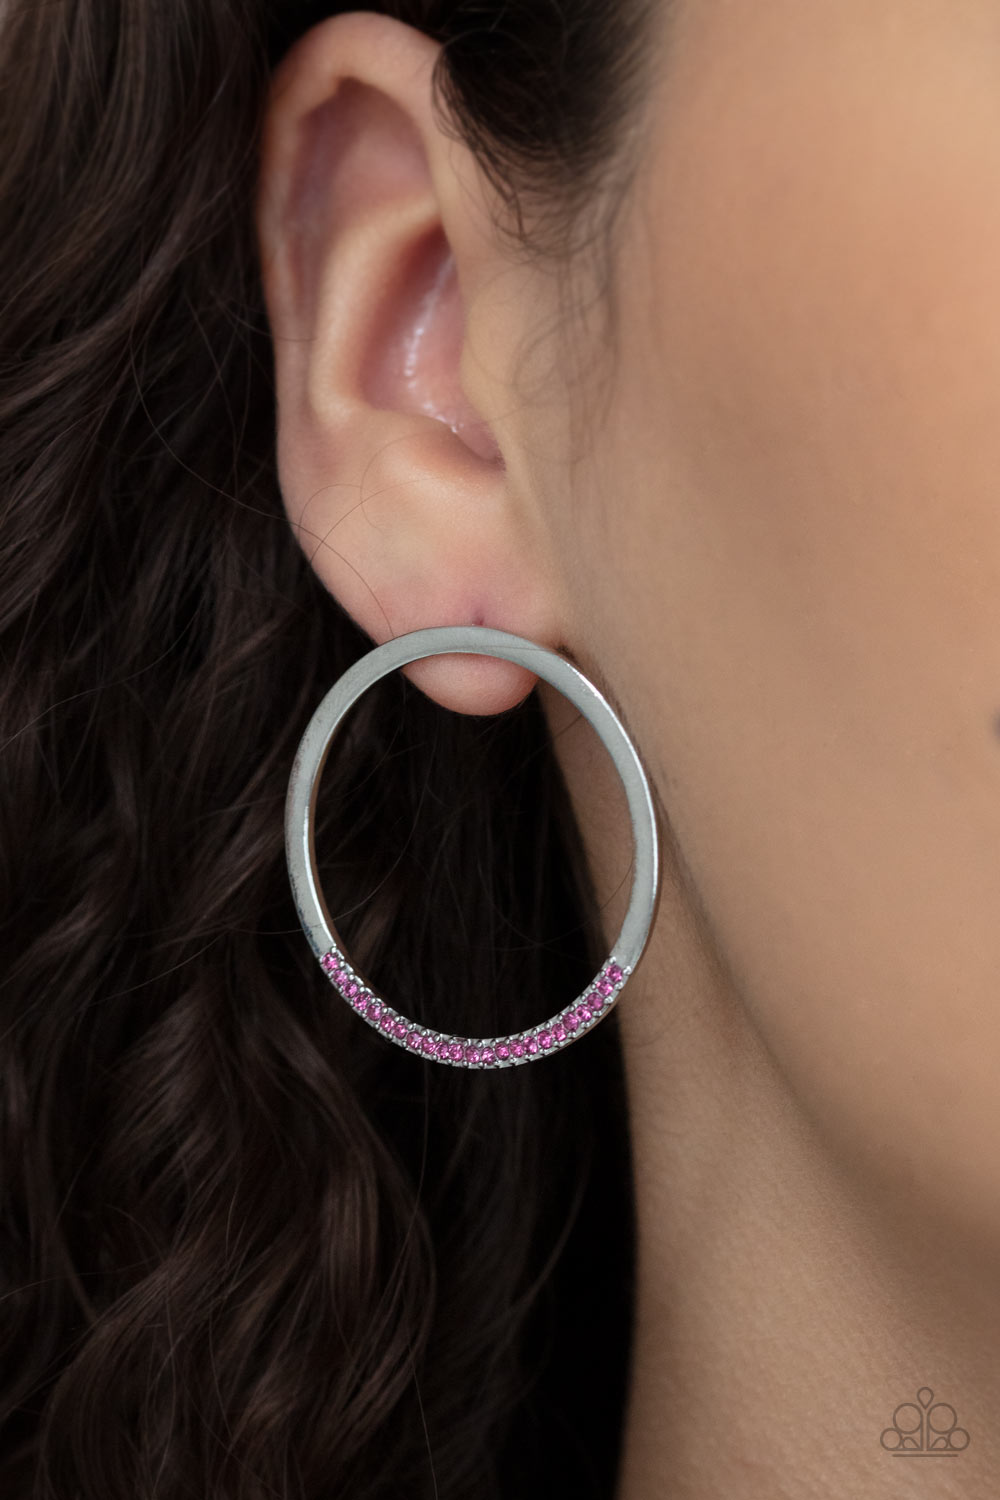 Spot On Opulence - Pink Earrings